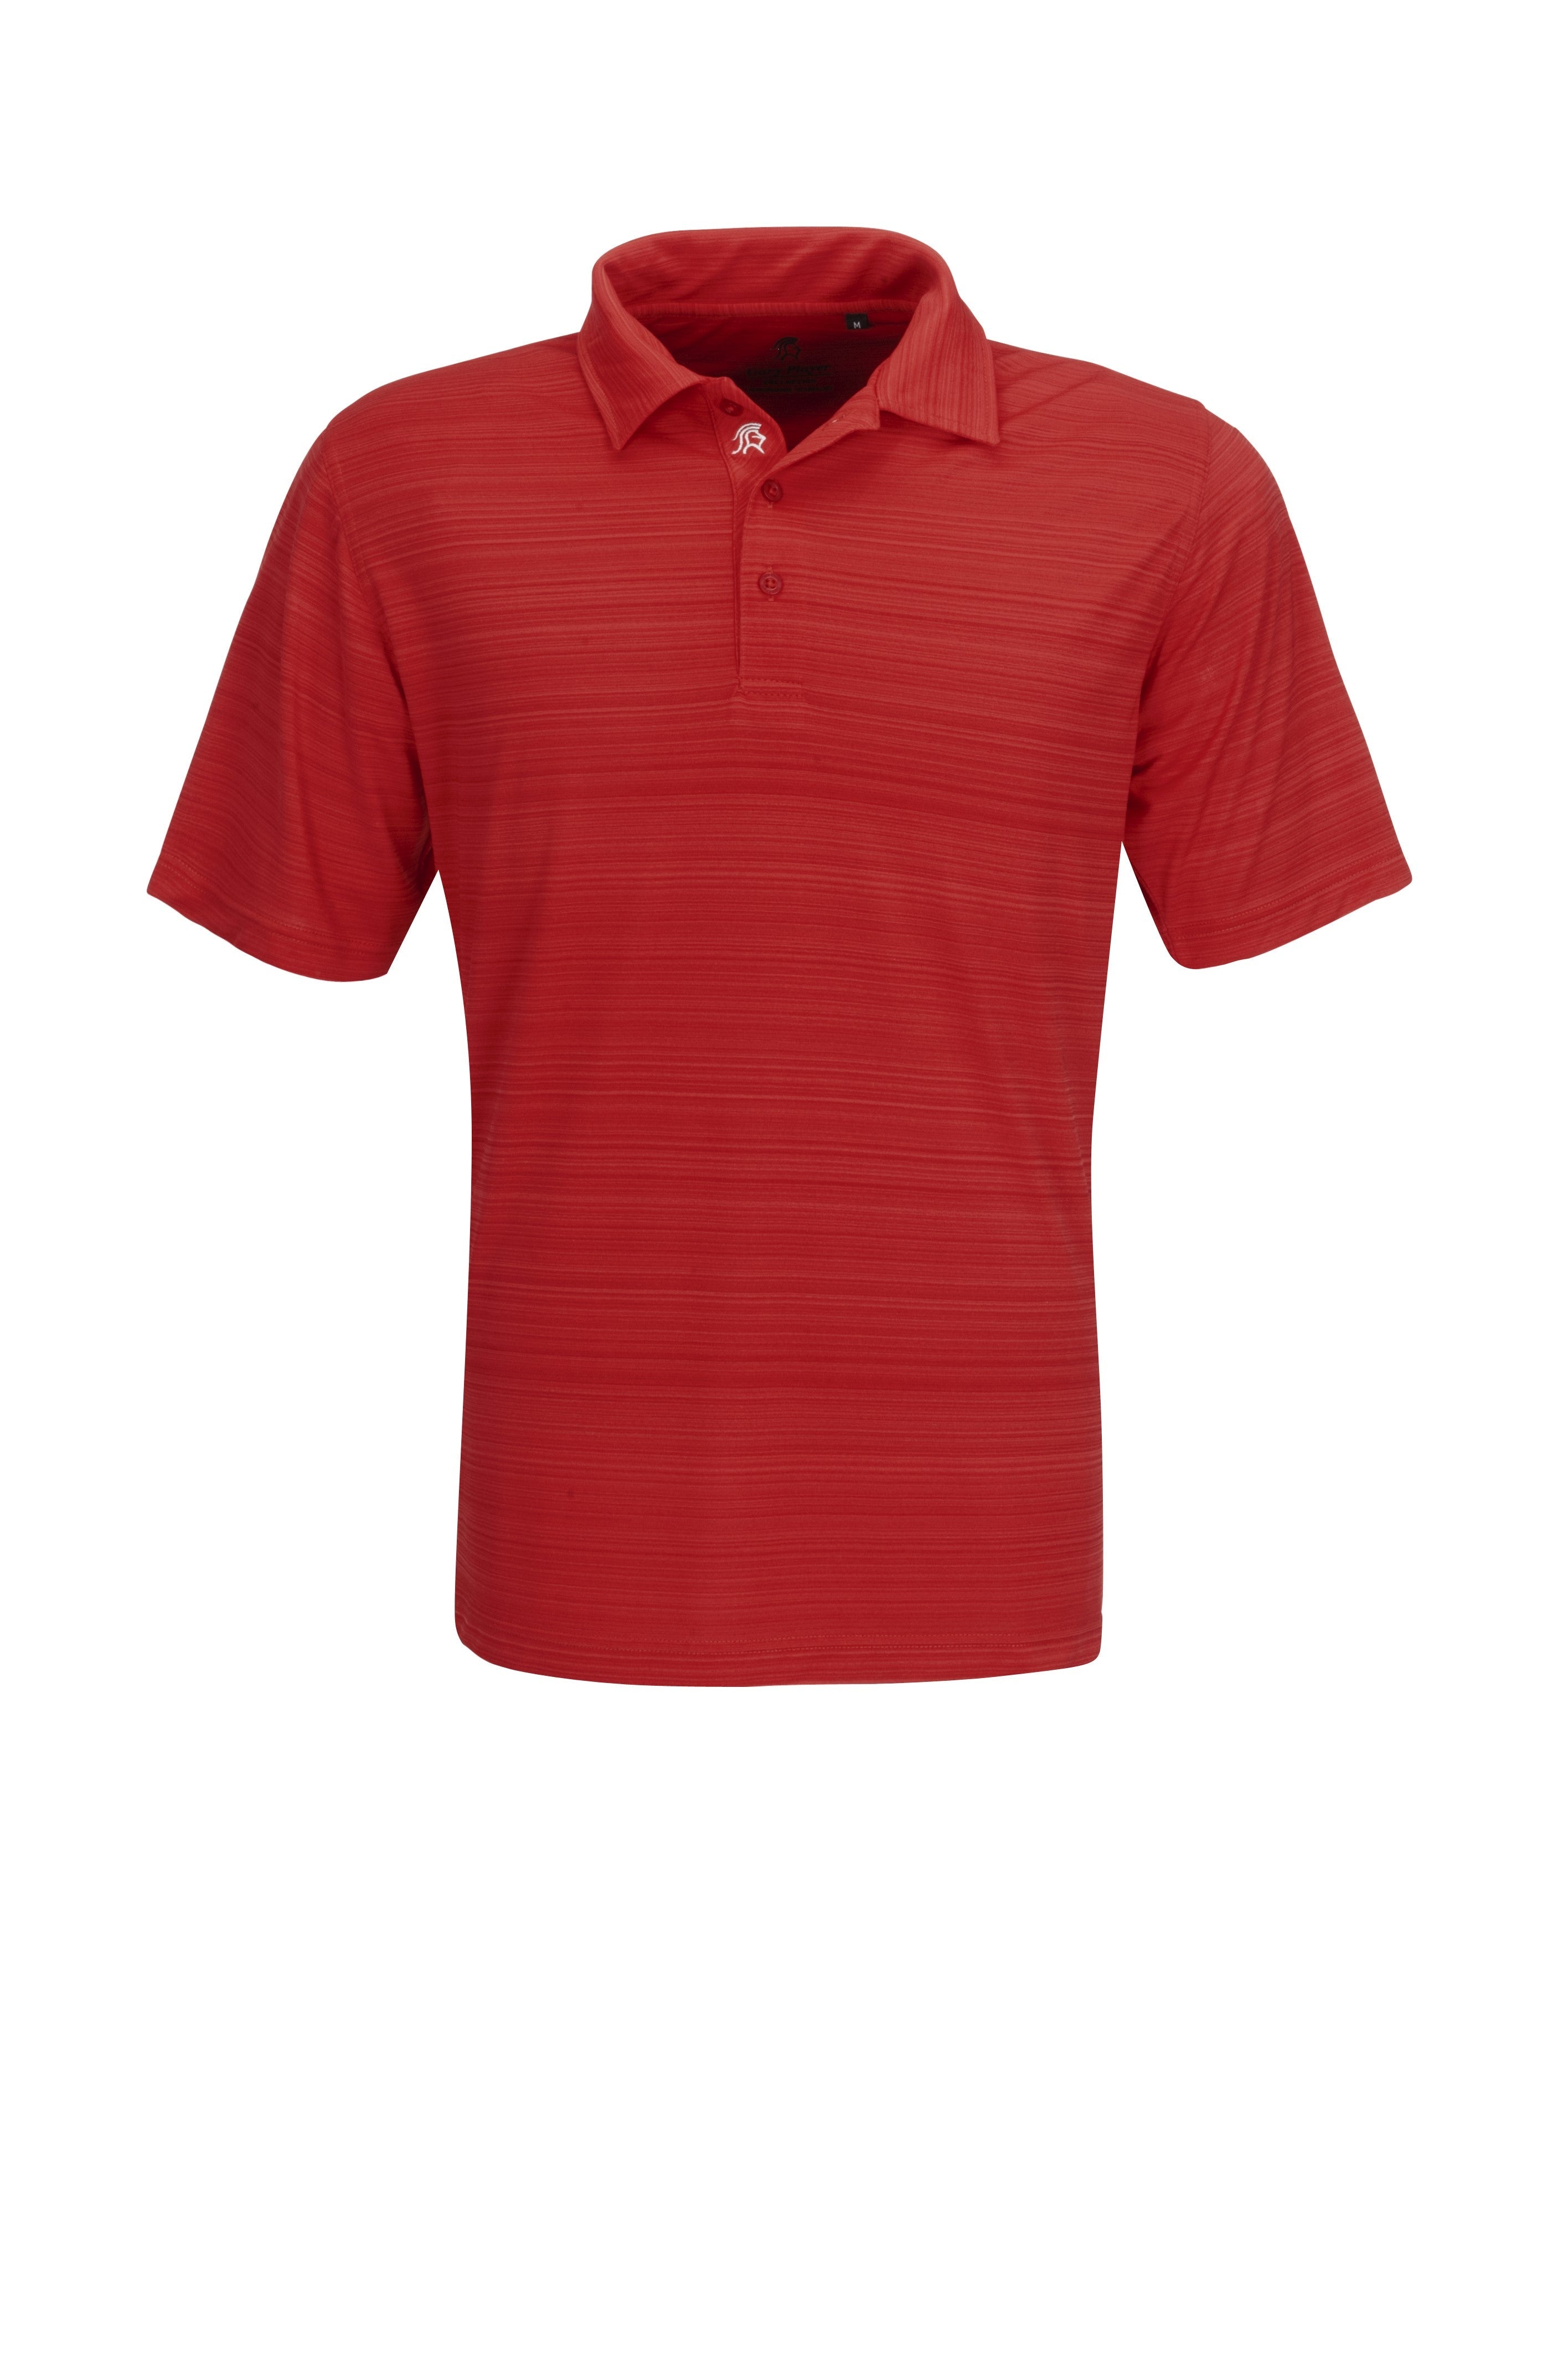 Mens Astoria Golf Shirt - Light Blue Only-L-Red-R